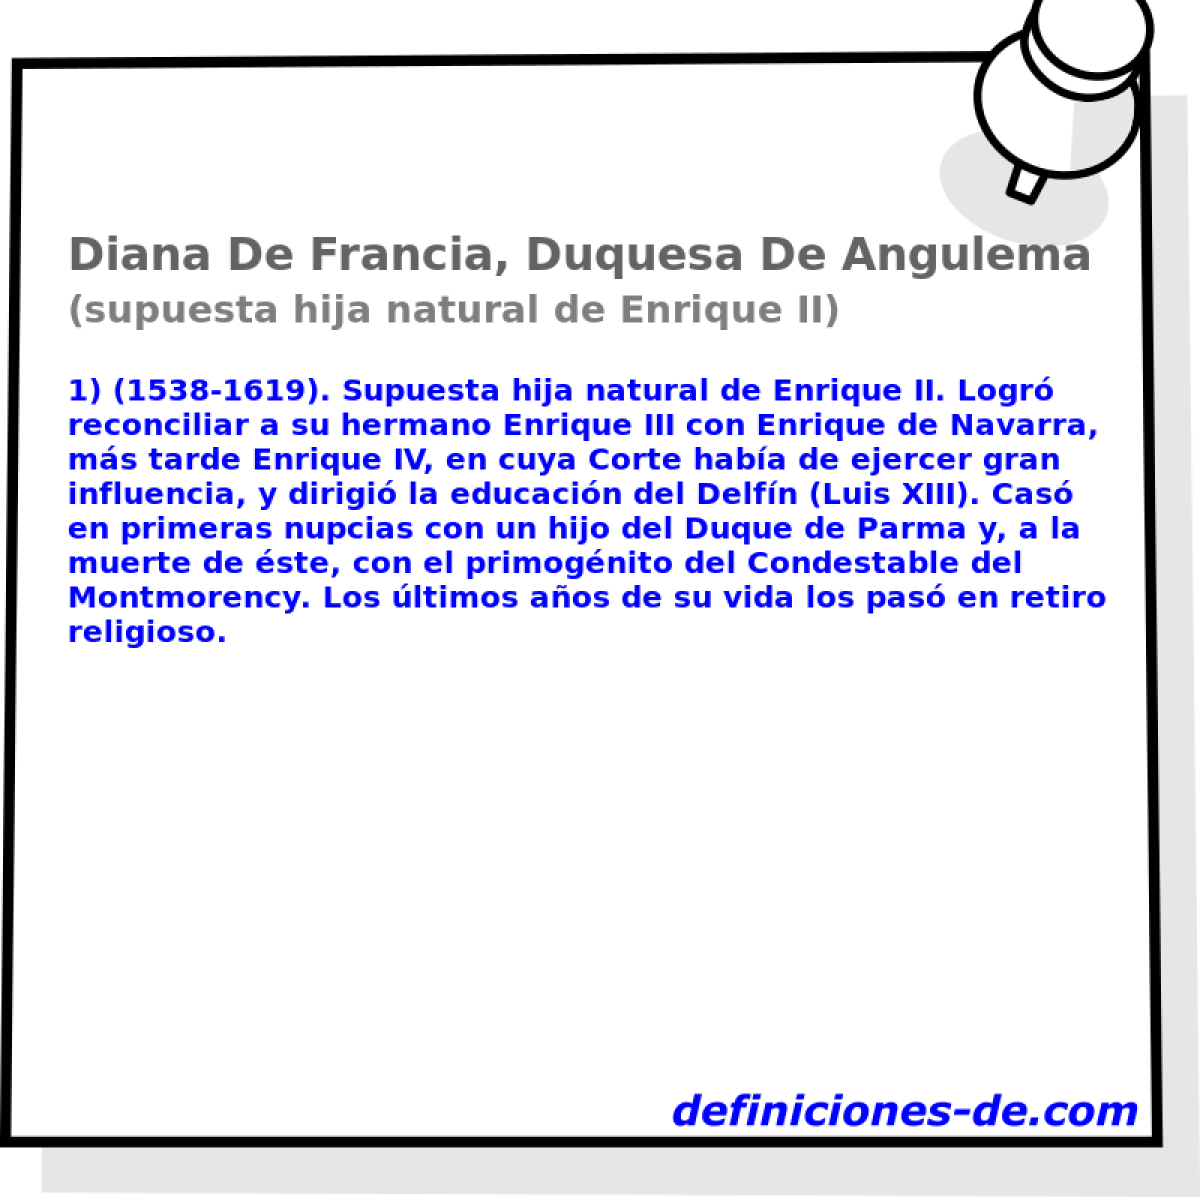 Diana De Francia, Duquesa De Angulema (supuesta hija natural de Enrique II)